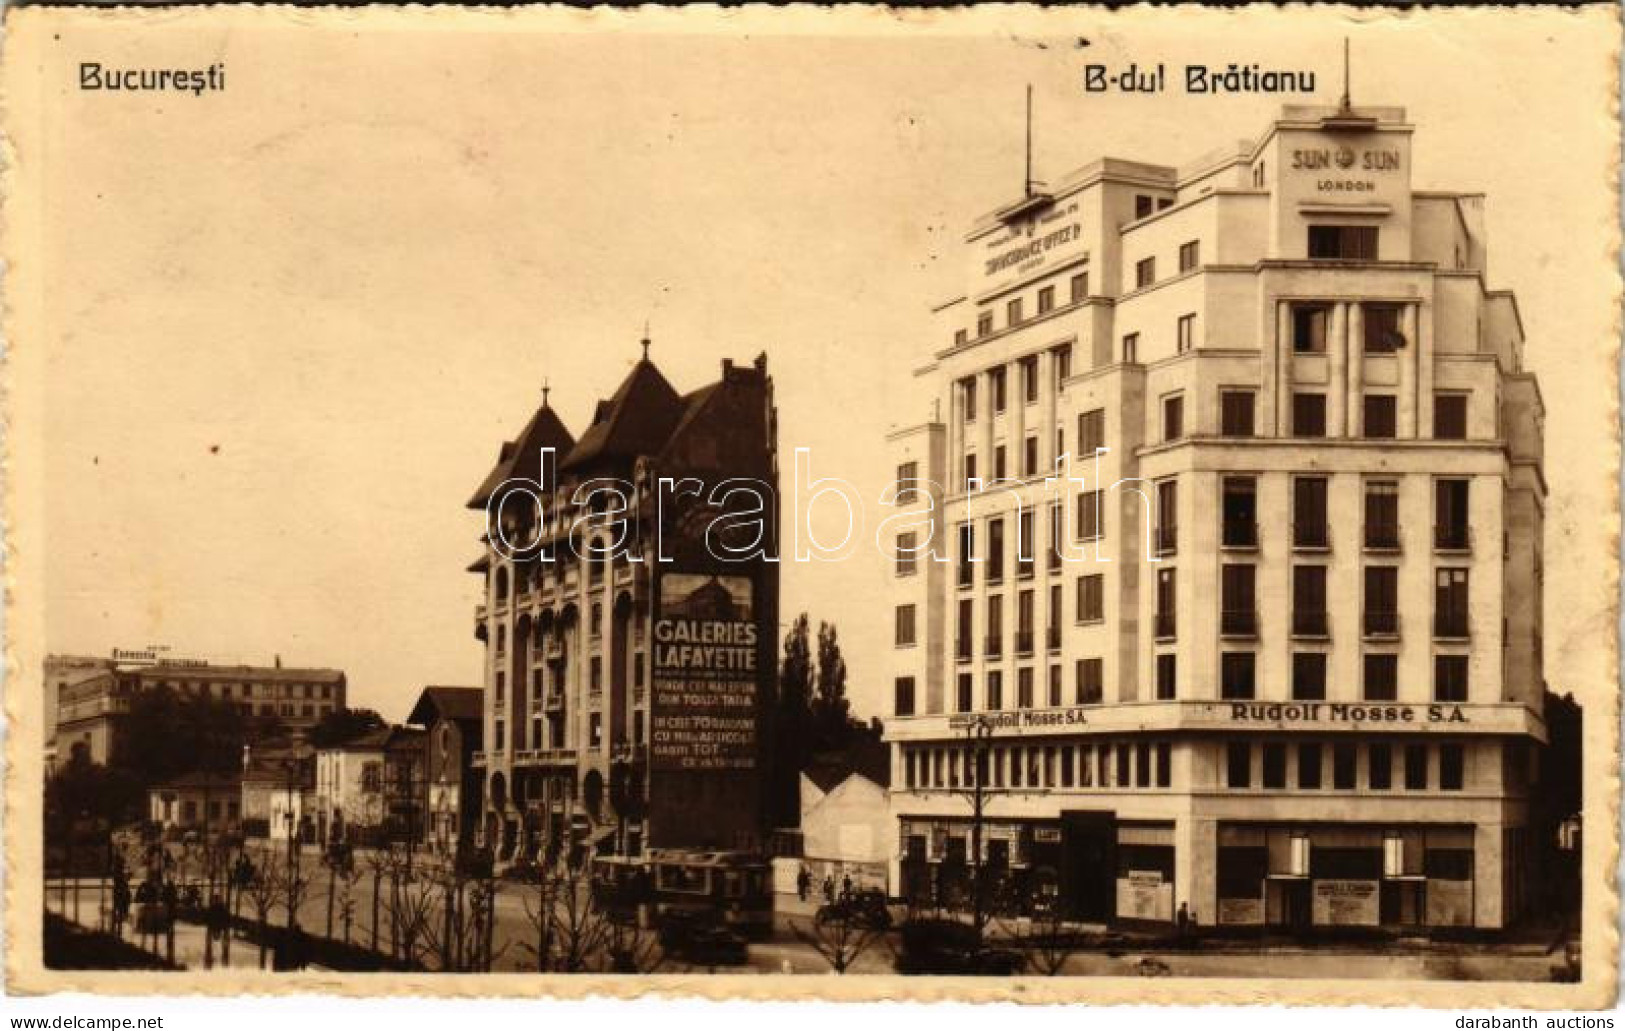 T2/T3 1933 Bucharest, Bukarest, Bucuresti, Bucuresci; B-dul Bratianu, Rudolf Mosse S.A., Sun Insurance Office Ltd. Londo - Zonder Classificatie